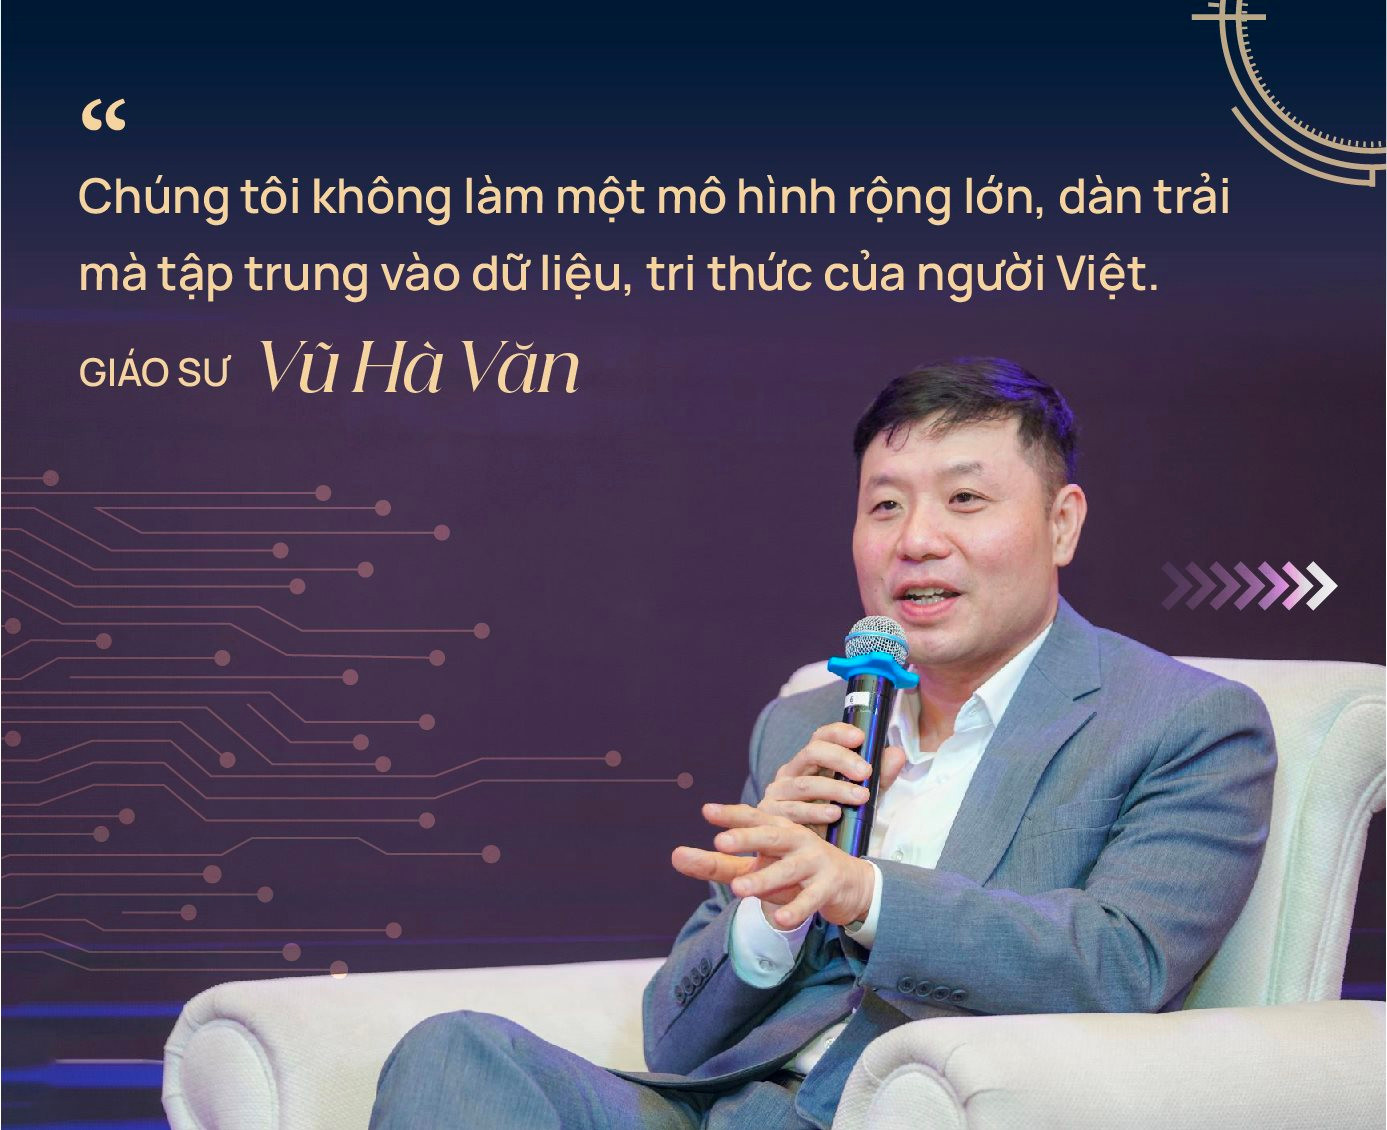 Giáo sư Vũ Hà Văn: Nhà toán học đi làm kinh doanh, xây ViGPT ‘không phải phép màu’ nhưng bài bản, nghiêm túc từ gốc rễ - Ảnh 3.